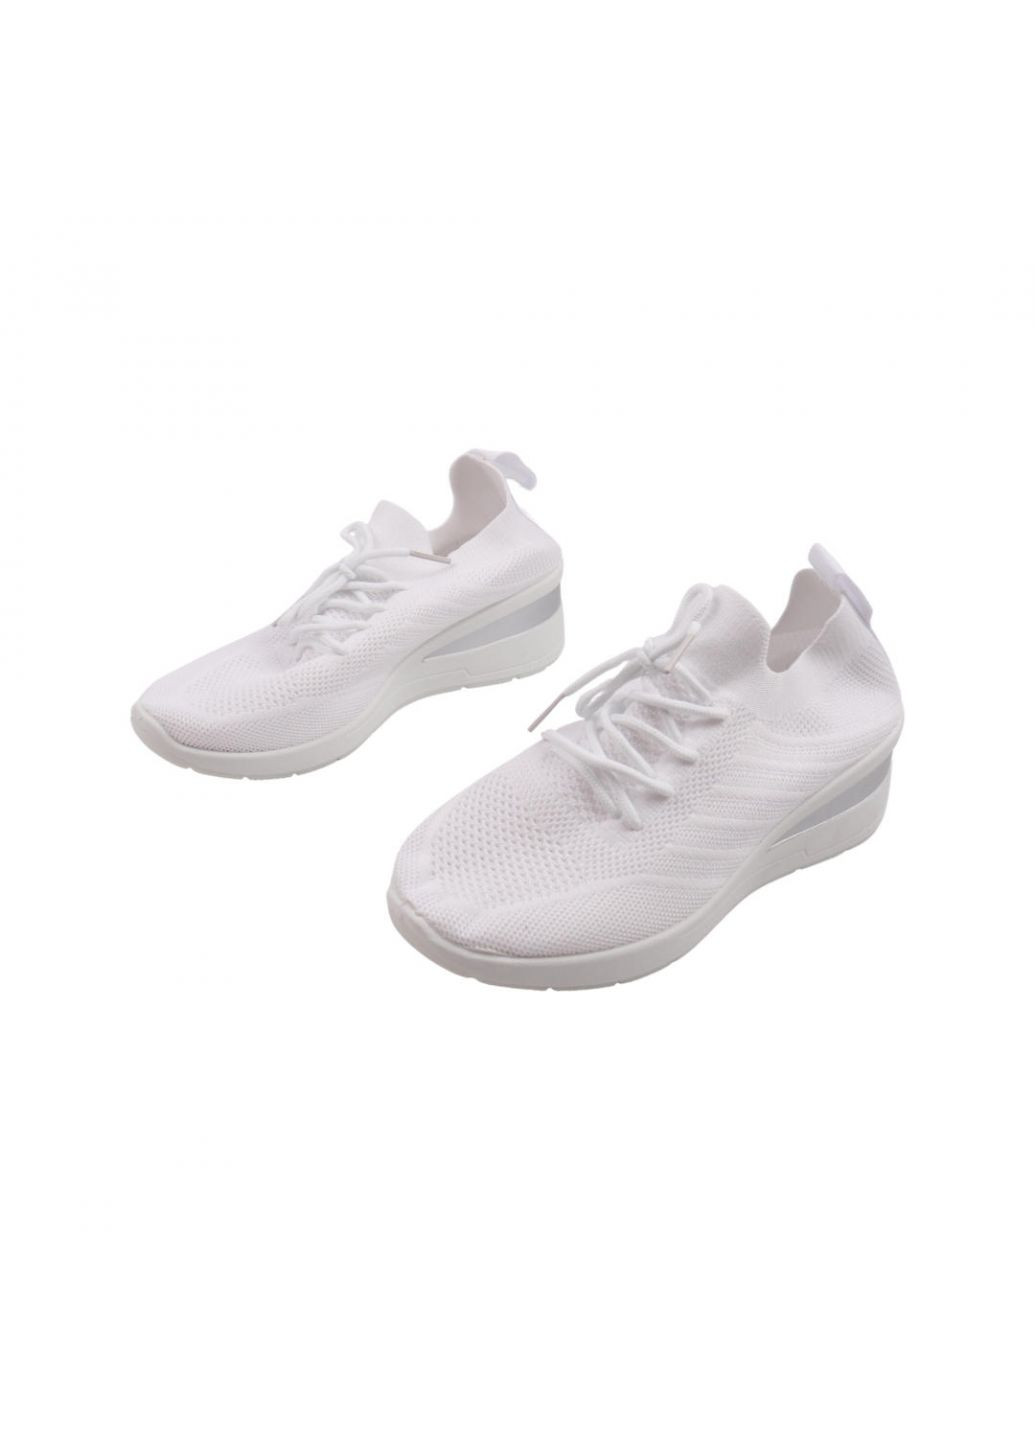 Белые кроссовки женские белые текстиль Fashion 26-22LK